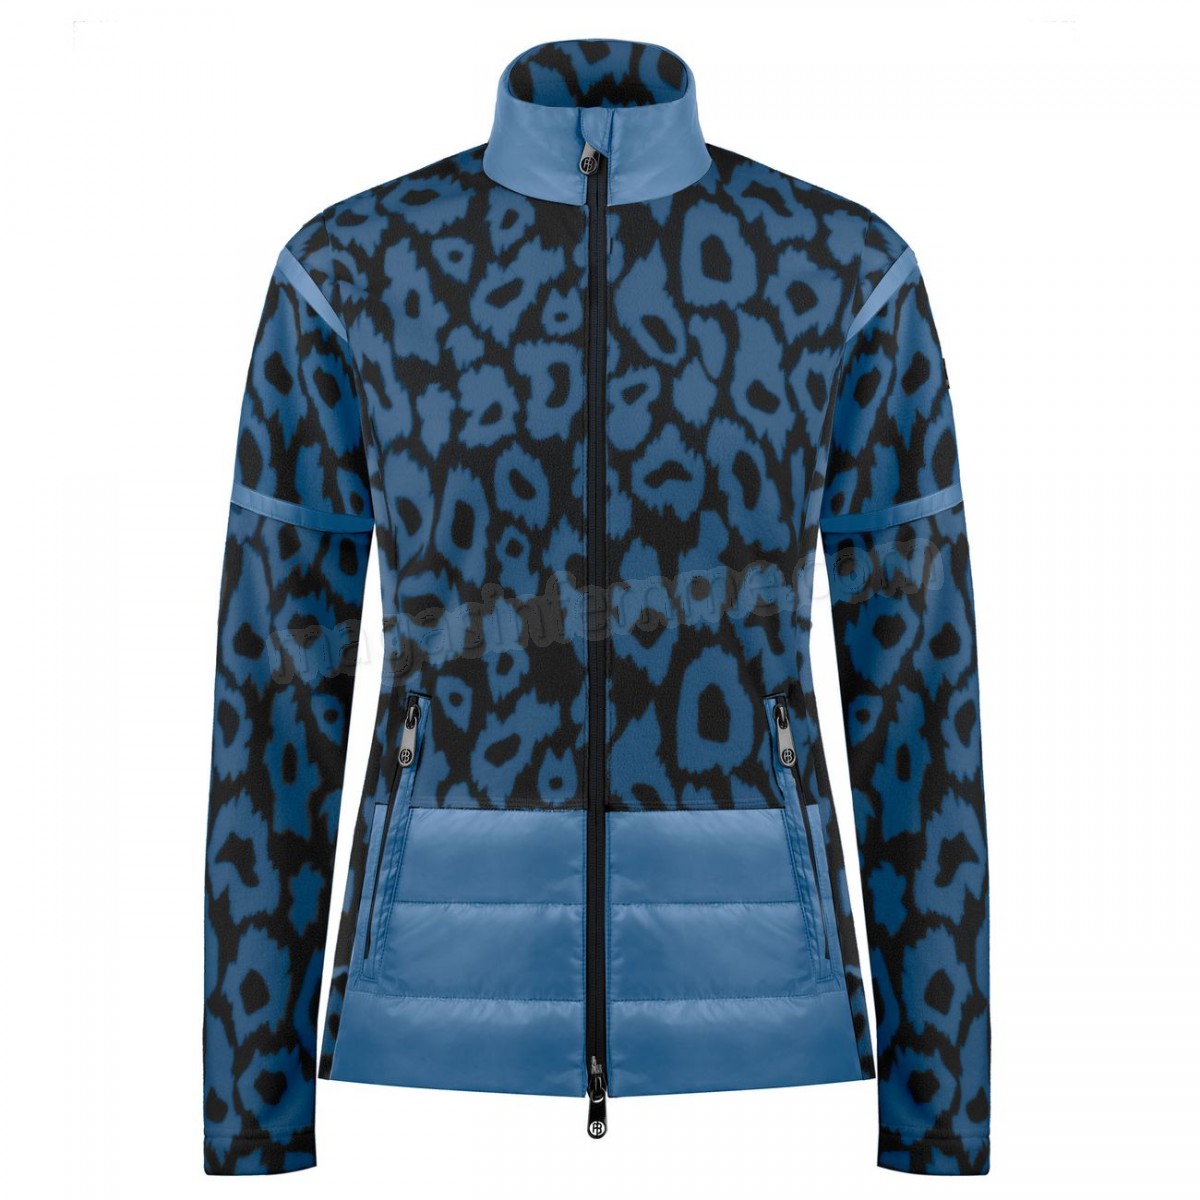 Poivre Blanc-Sports d'hiver femme POIVRE BLANC Veste Polaire Poivre Blanc Hybrid Fleece Jacket 1601 Panther Blue Femme en solde - -0